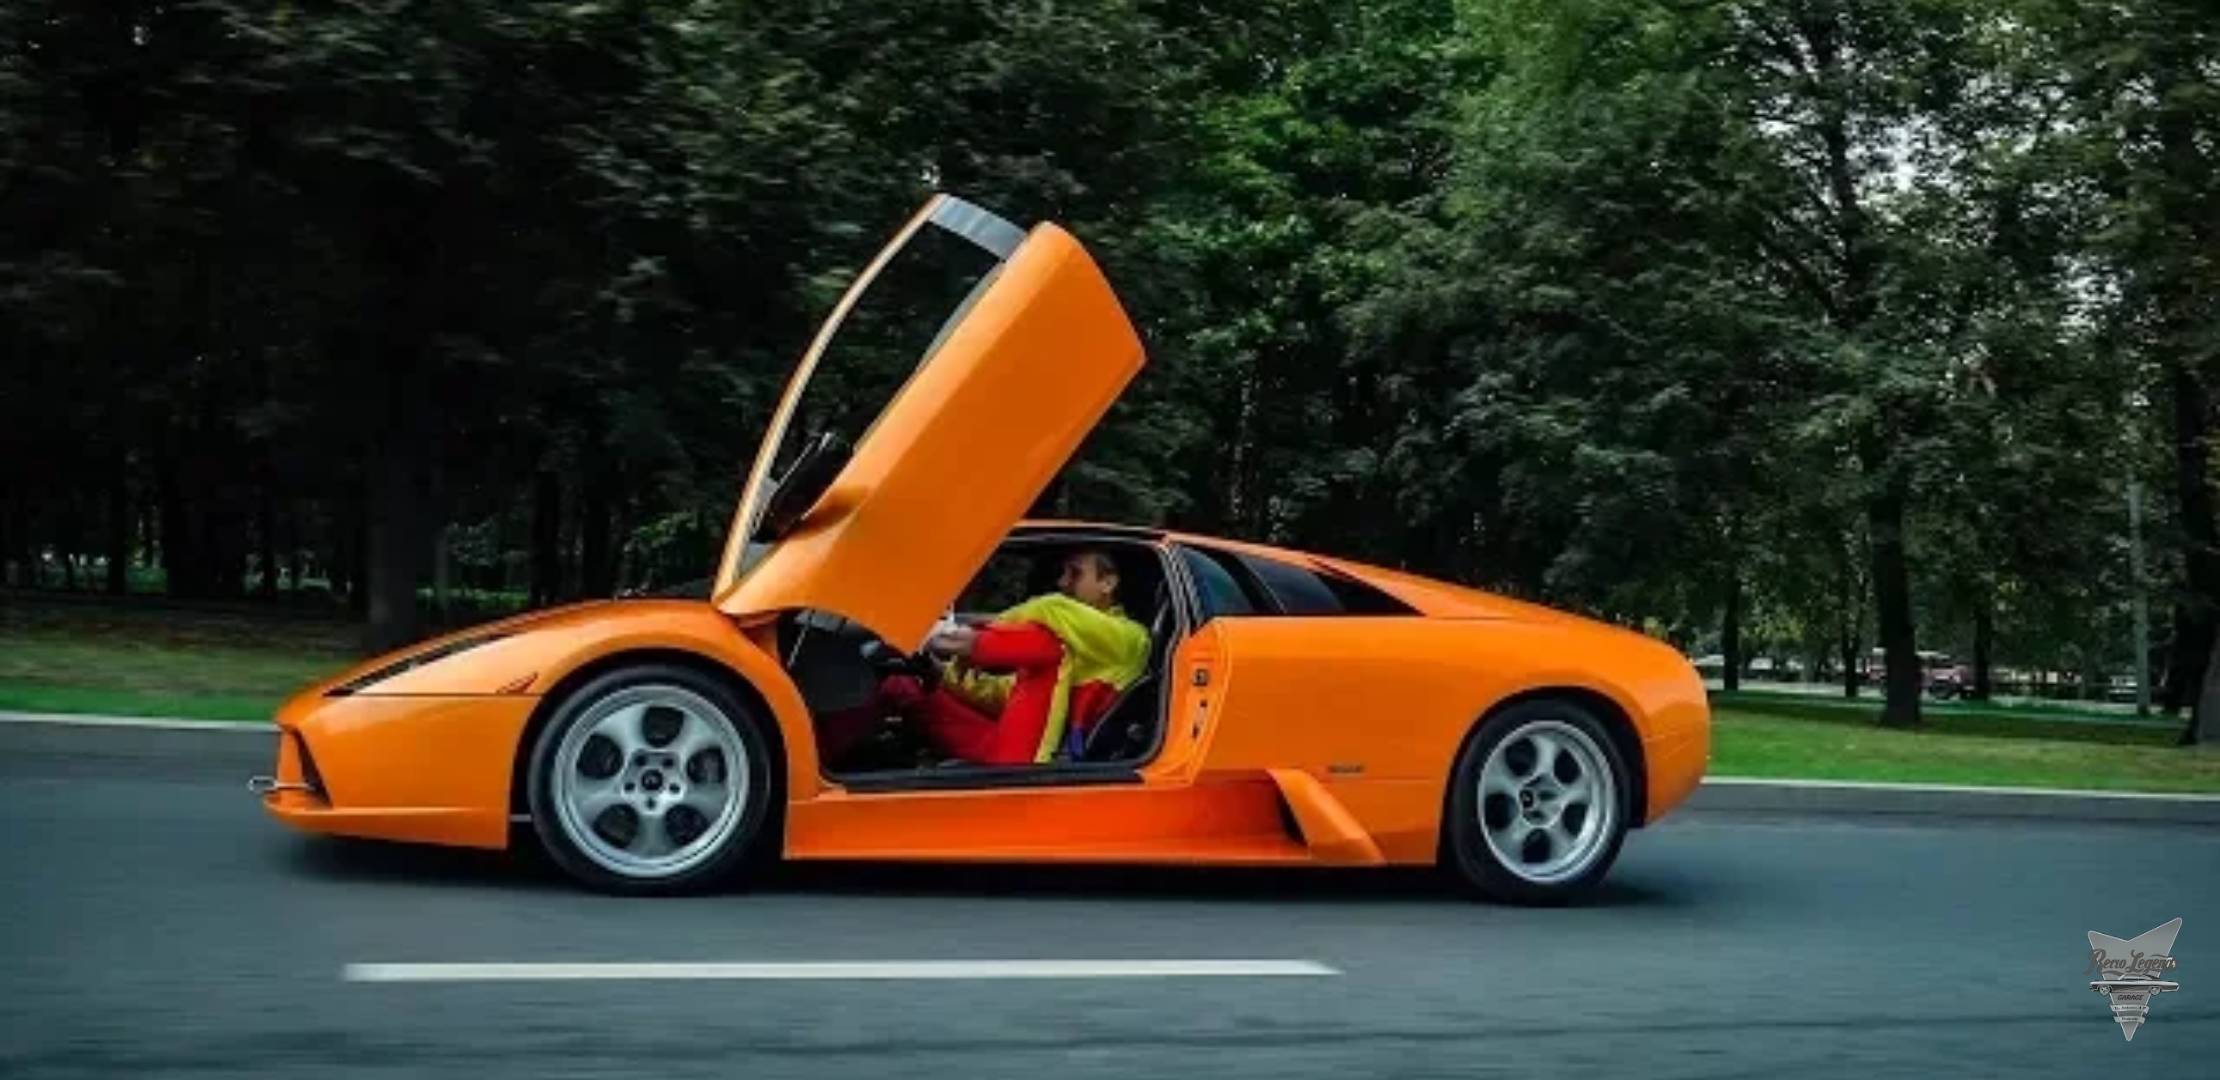 Анонс видео-теста Lamborghini Murcielago. Как достичь звука формулы 1 !?